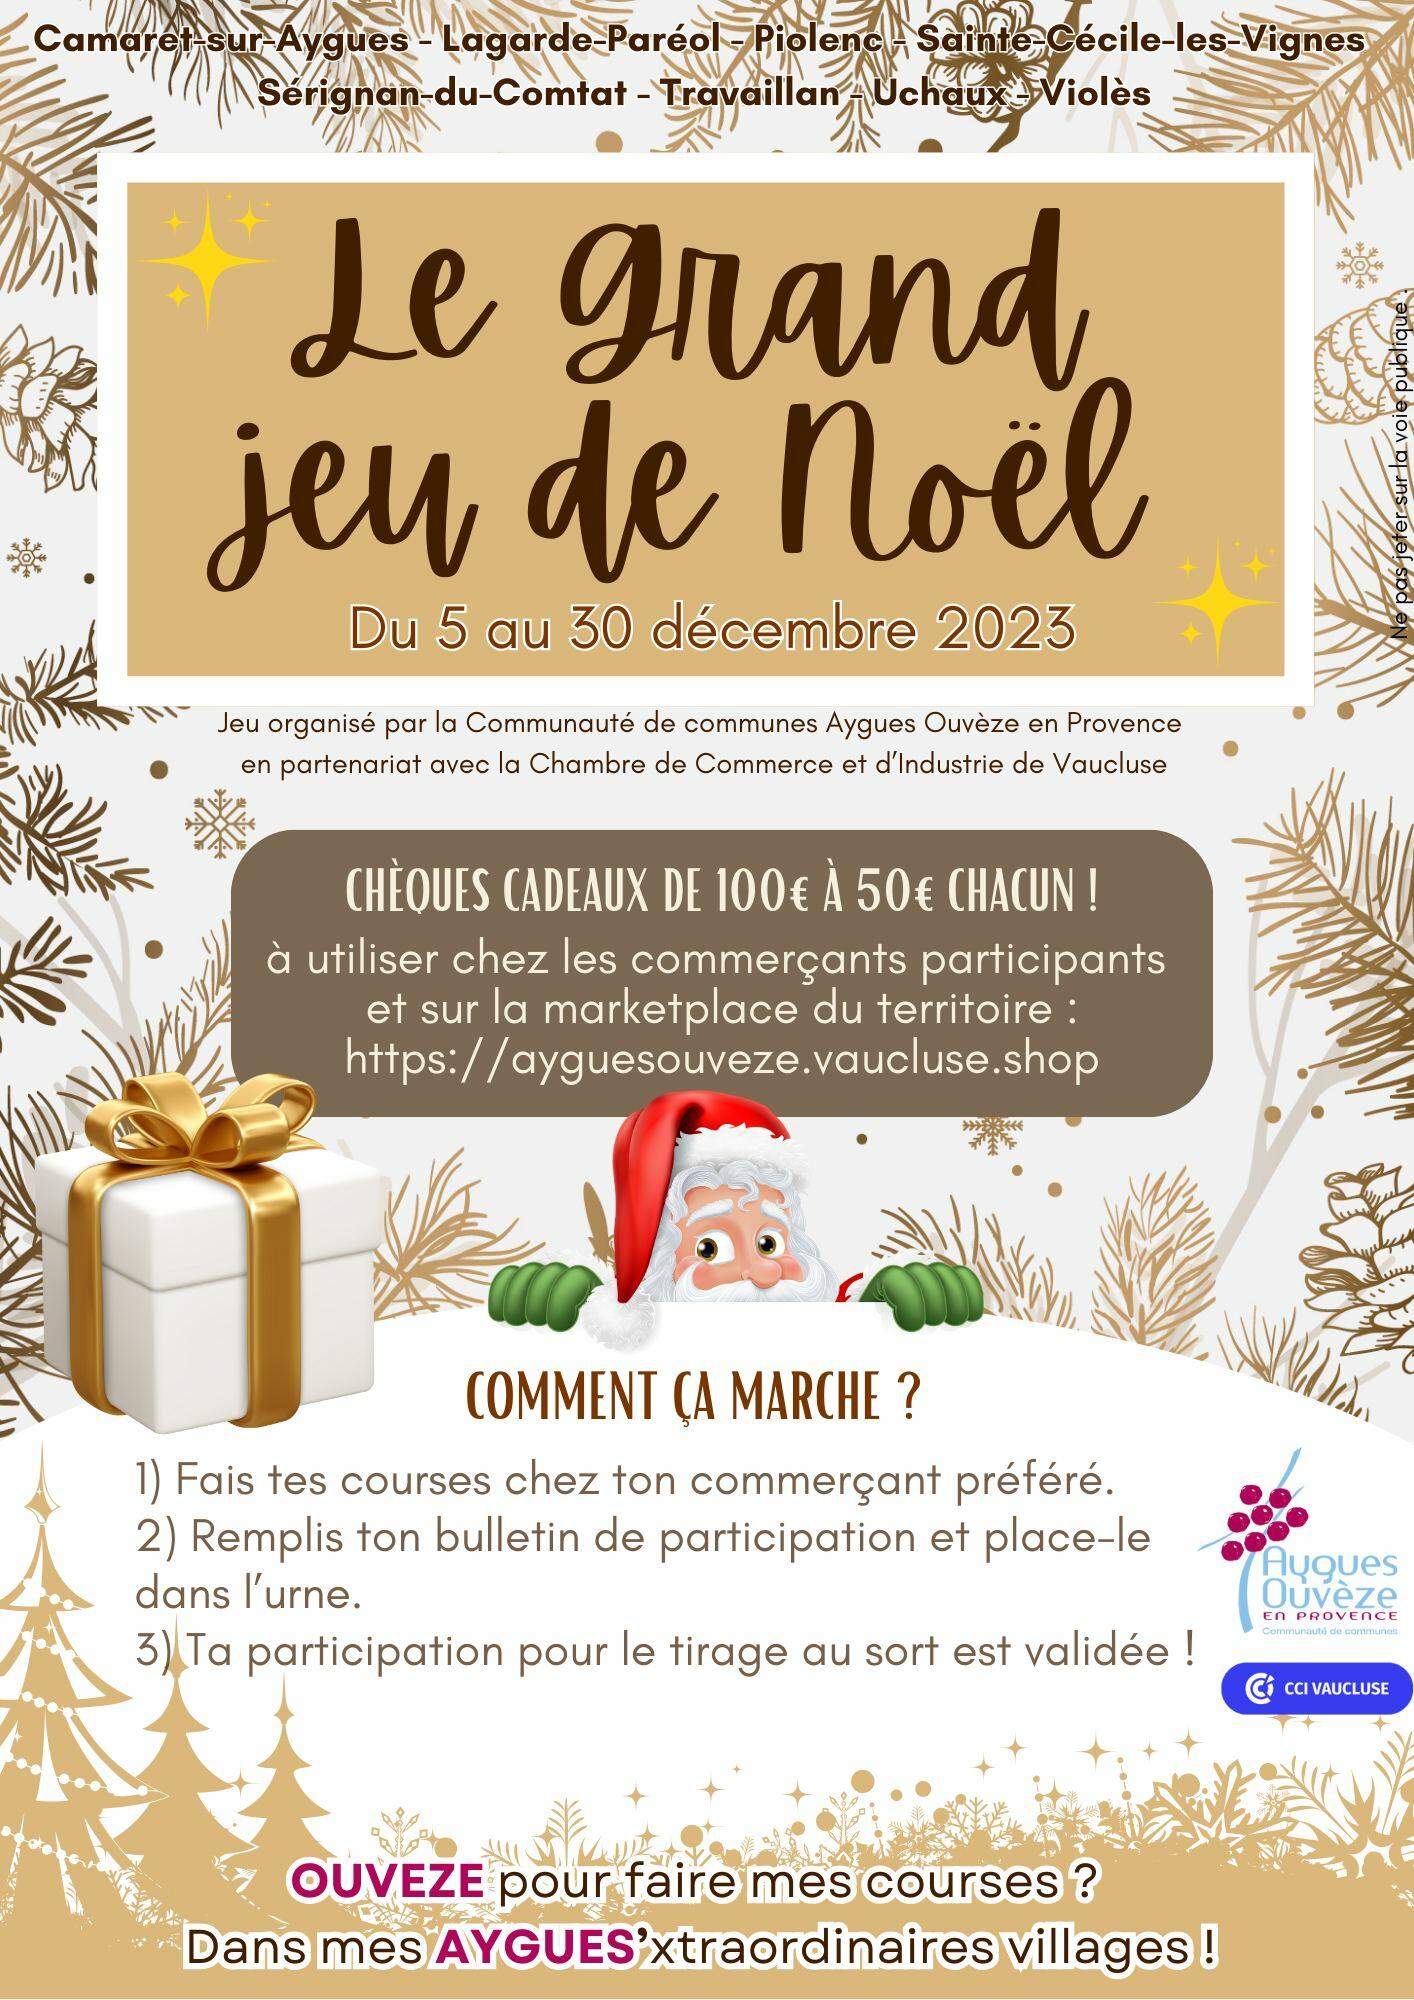 Grand jeu concours de Noël de la Communauté de communes Aygues Ouvèze en Provence